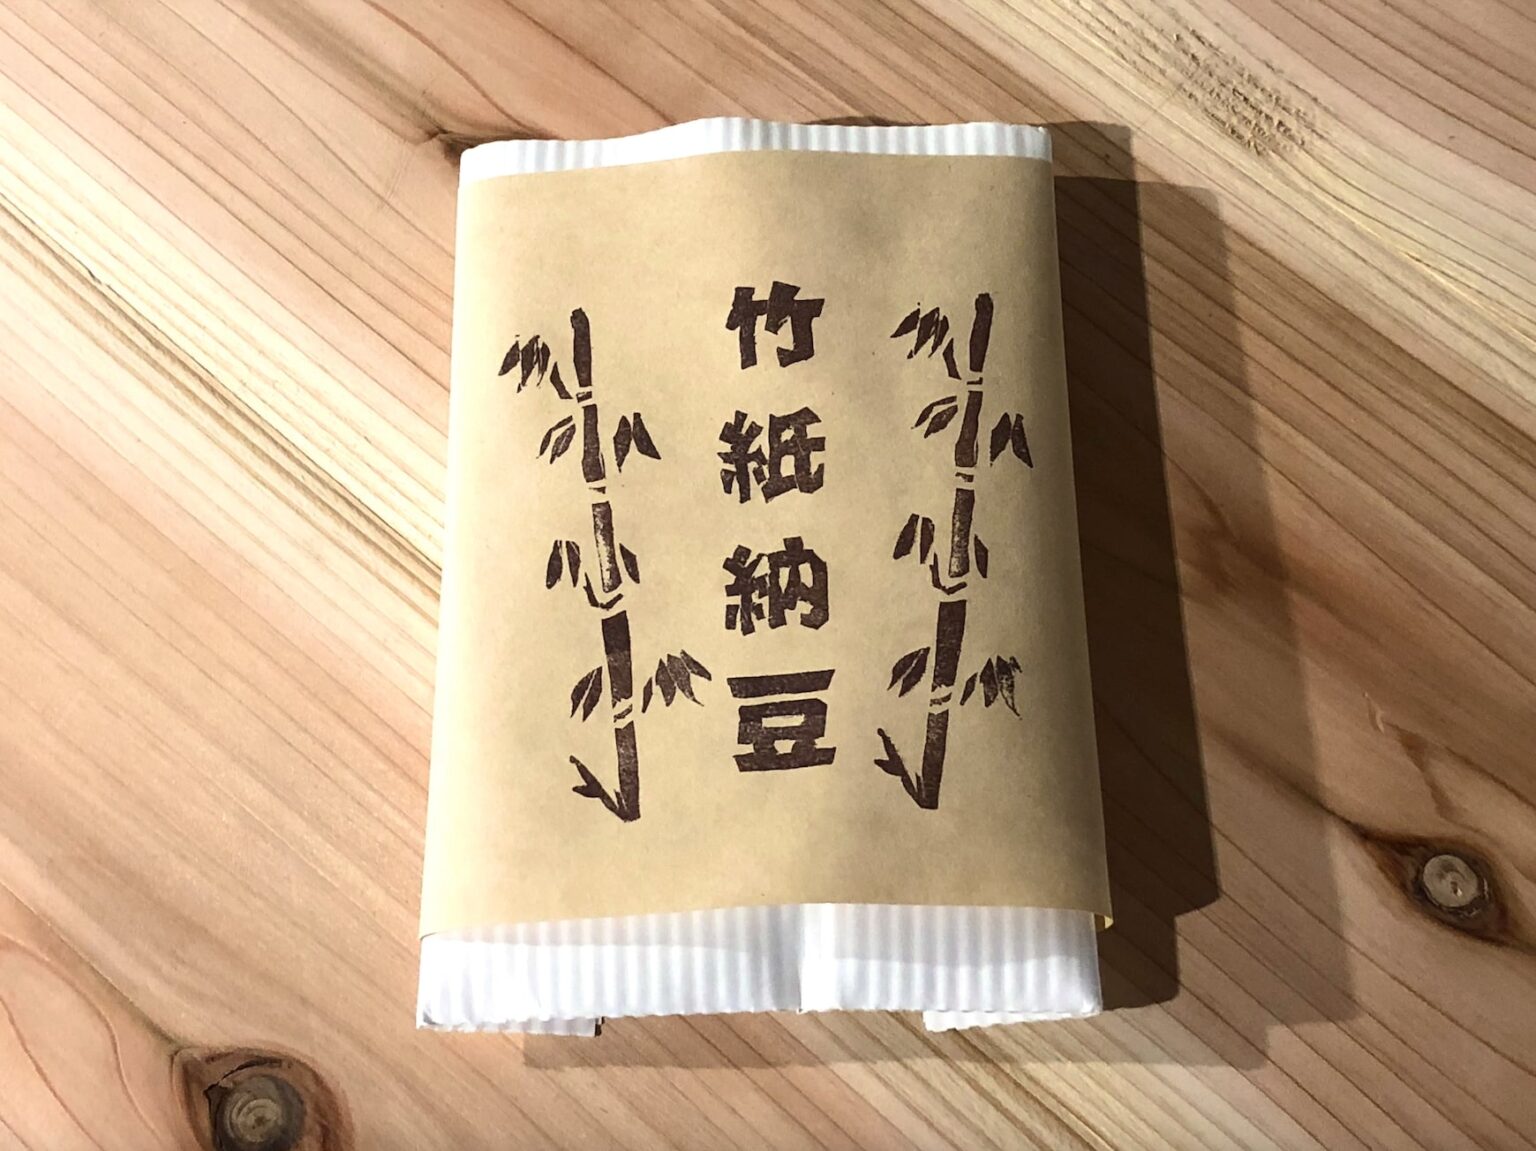 〈登喜和食品〉さんと共同開発中の試作品「竹紙納豆」。